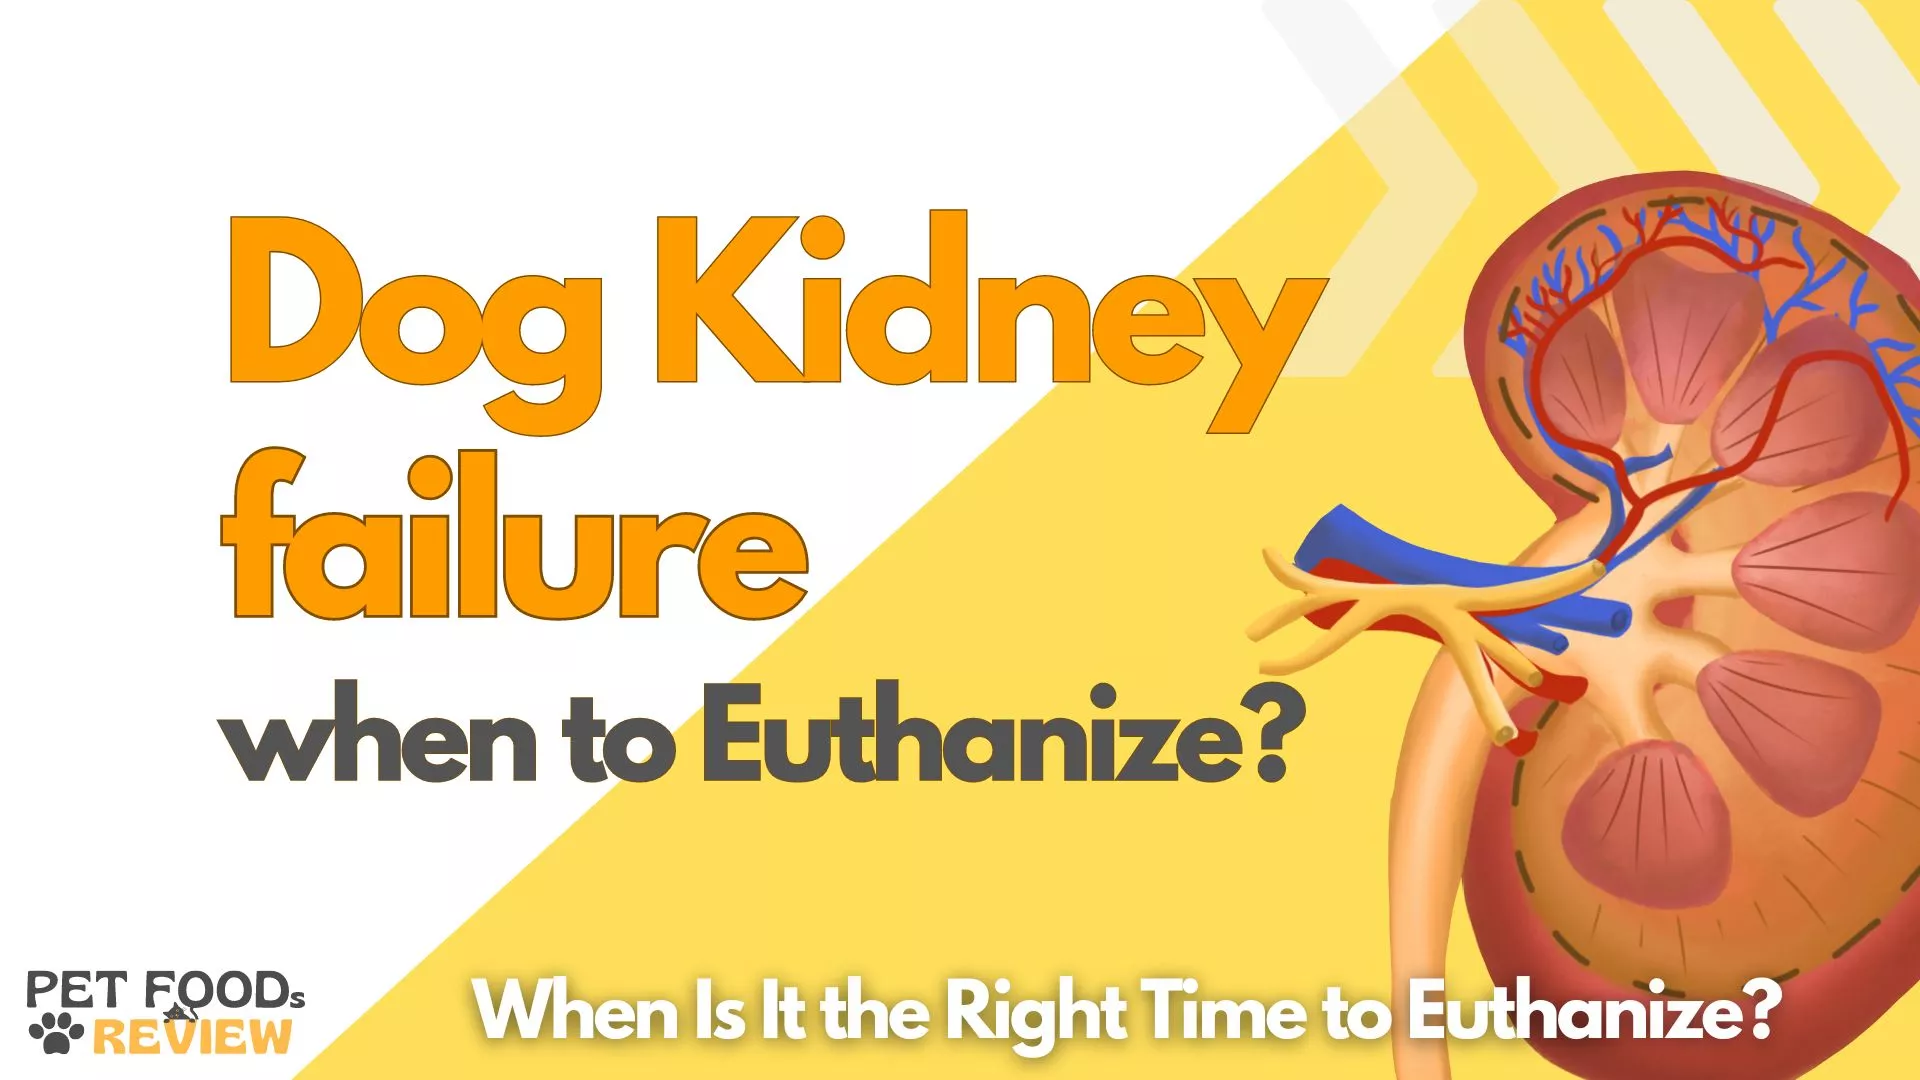 Dog Kidney failure when to Euthanize